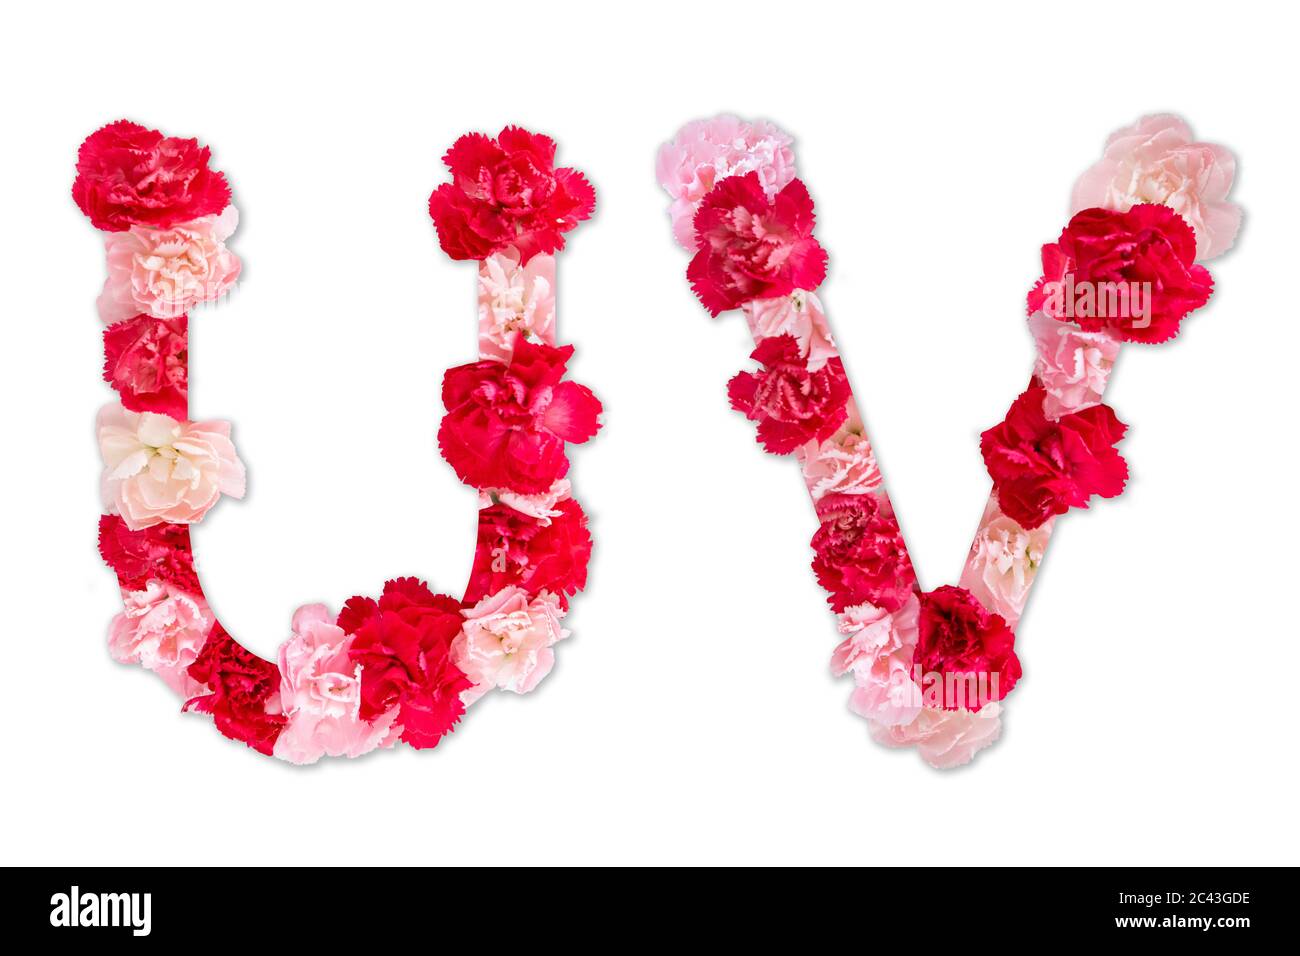 Police de fleurs alphabet U V ensemble (collection A-Z), fait de vraies fleurs de la Carnation rose, rouge avec papier coupé en forme de lettre majuscule. Police florale Banque D'Images